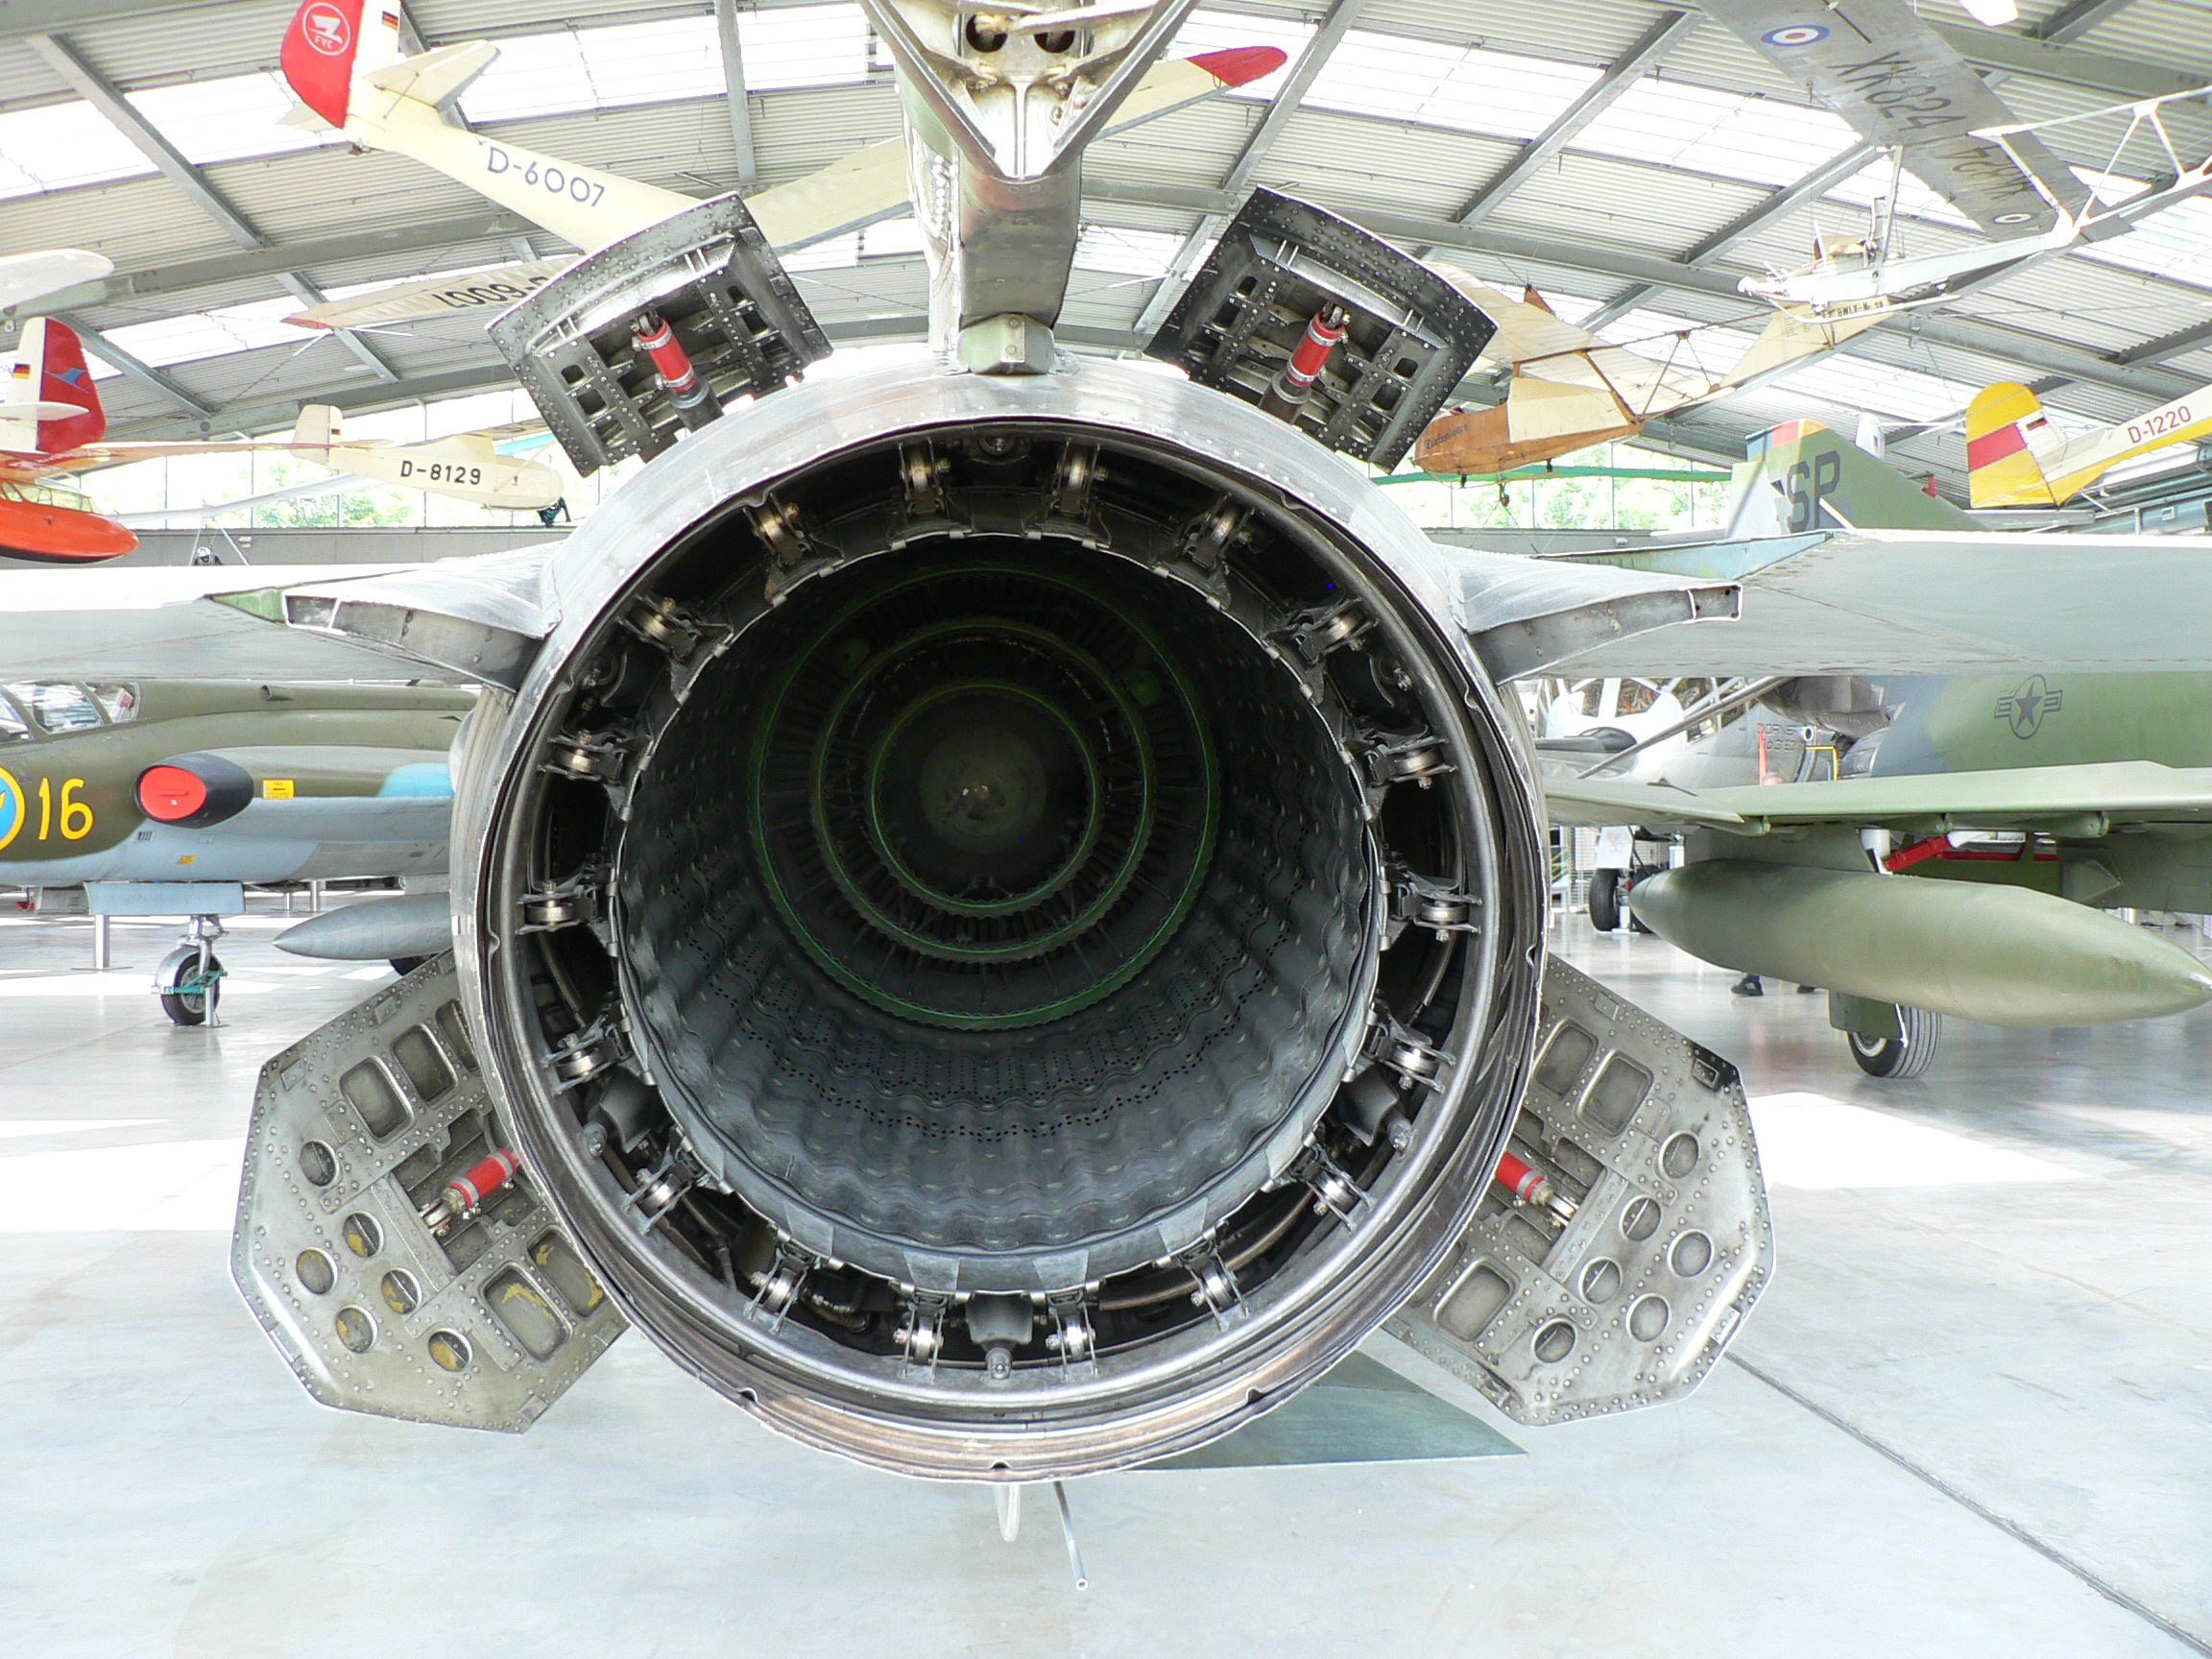 MiG-23 afterburner exhaust airbrakes